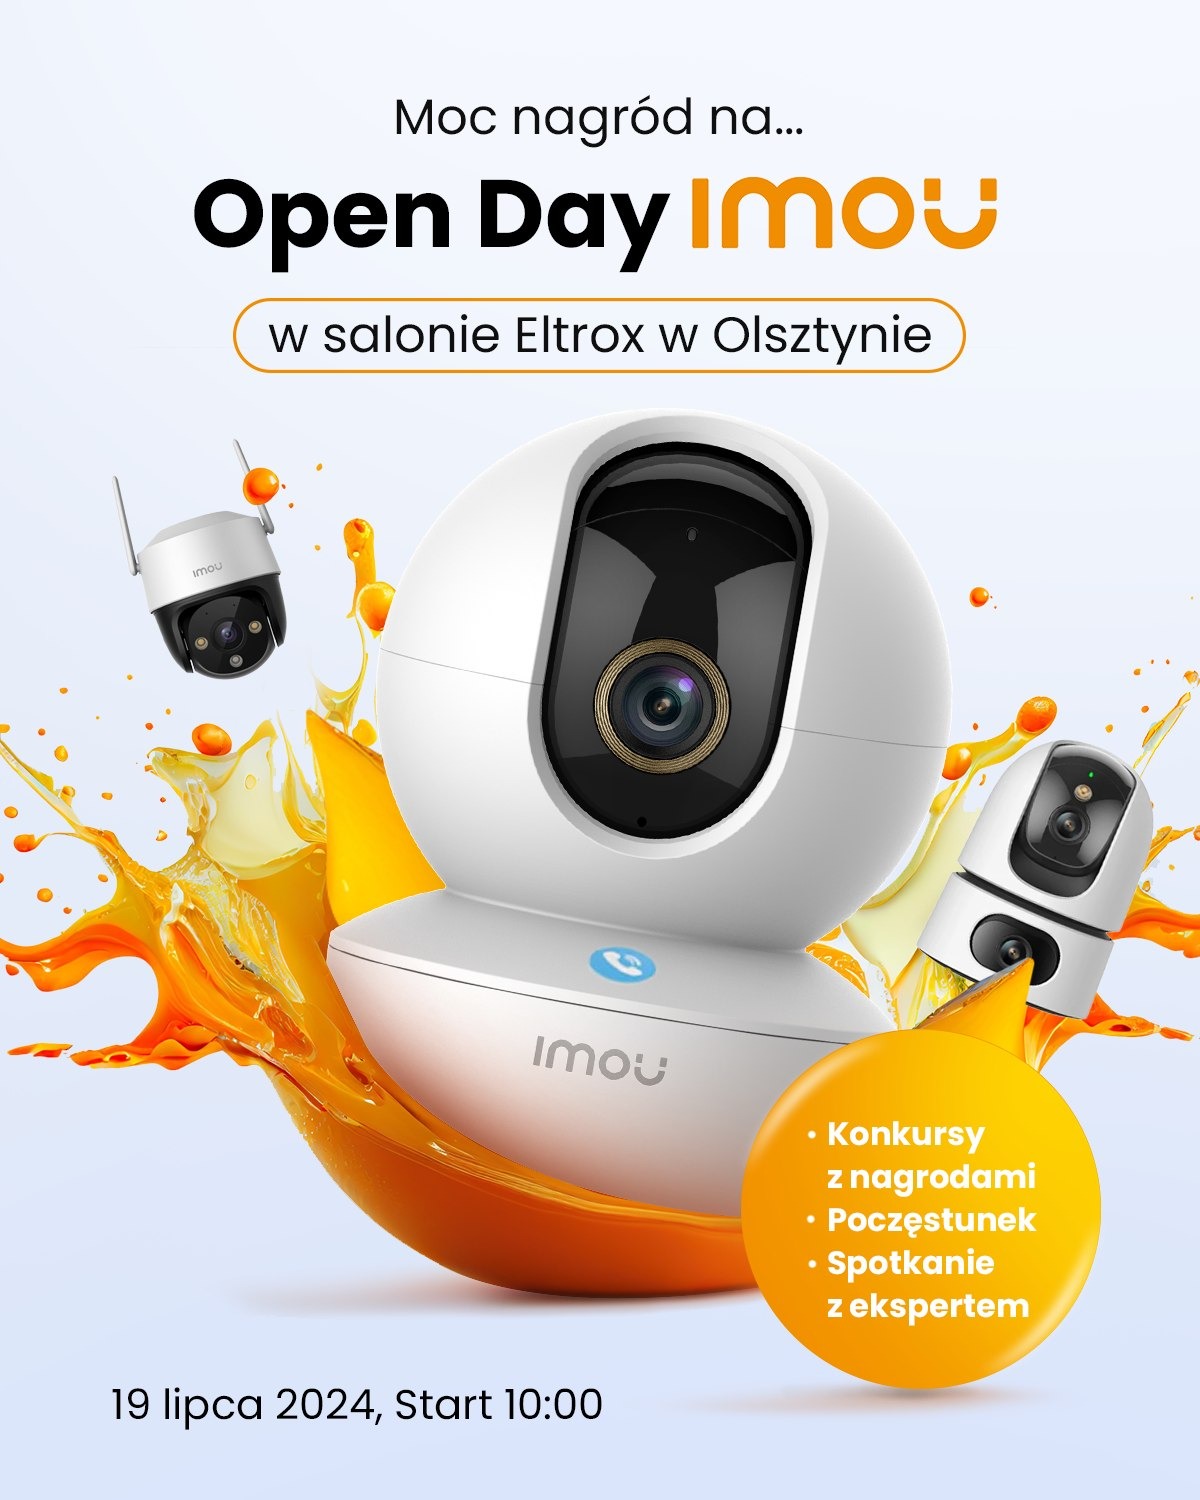 Open Day Imou w Salonie Eltrox w Olsztynie